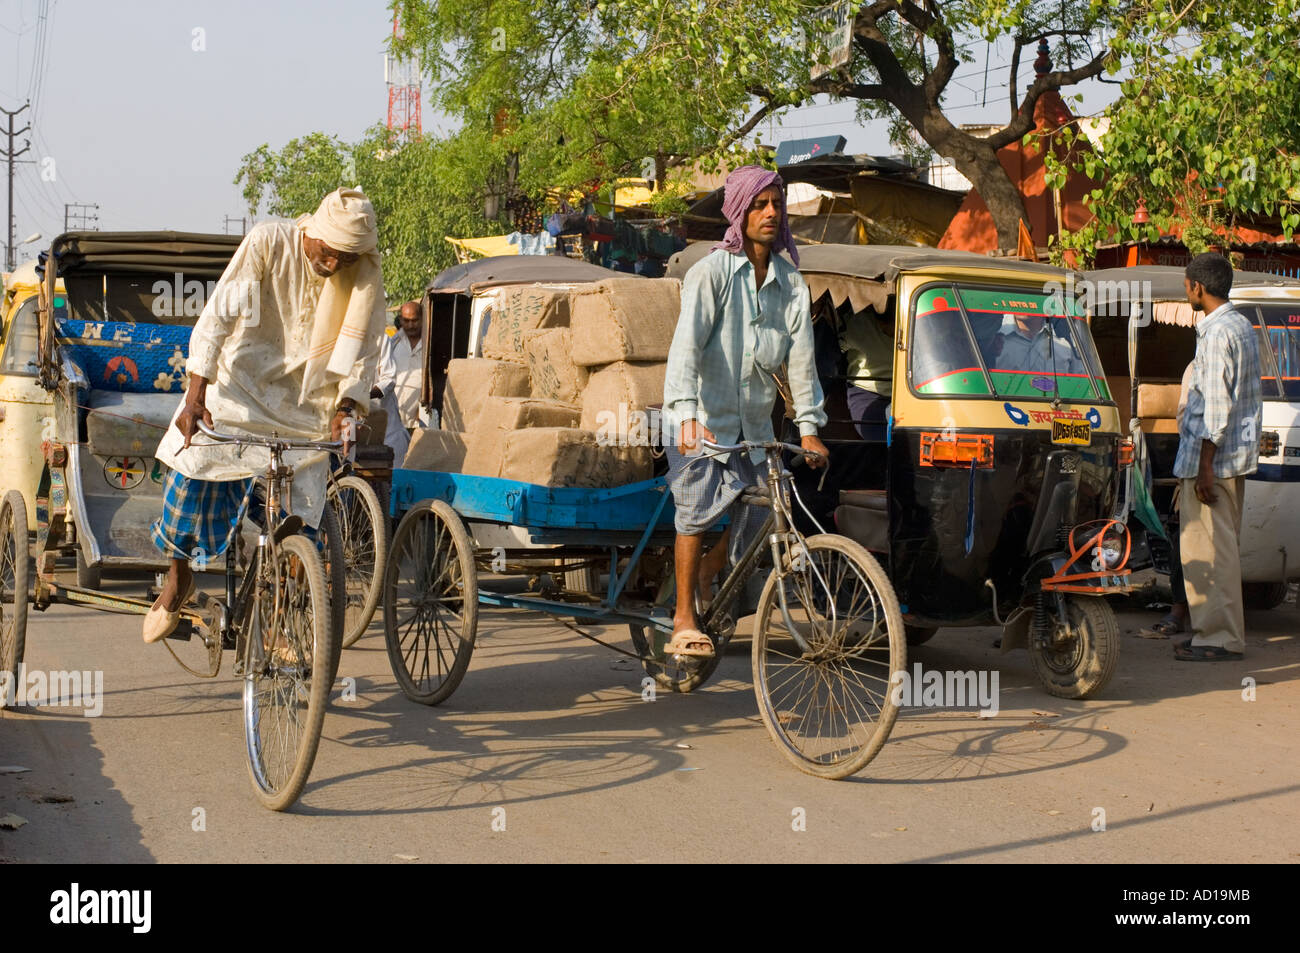 Une scène de rue chaotique typique à Varanasi avec randonnée et auto rickshaws (Tuk Tuks) sur les rues animées. Banque D'Images